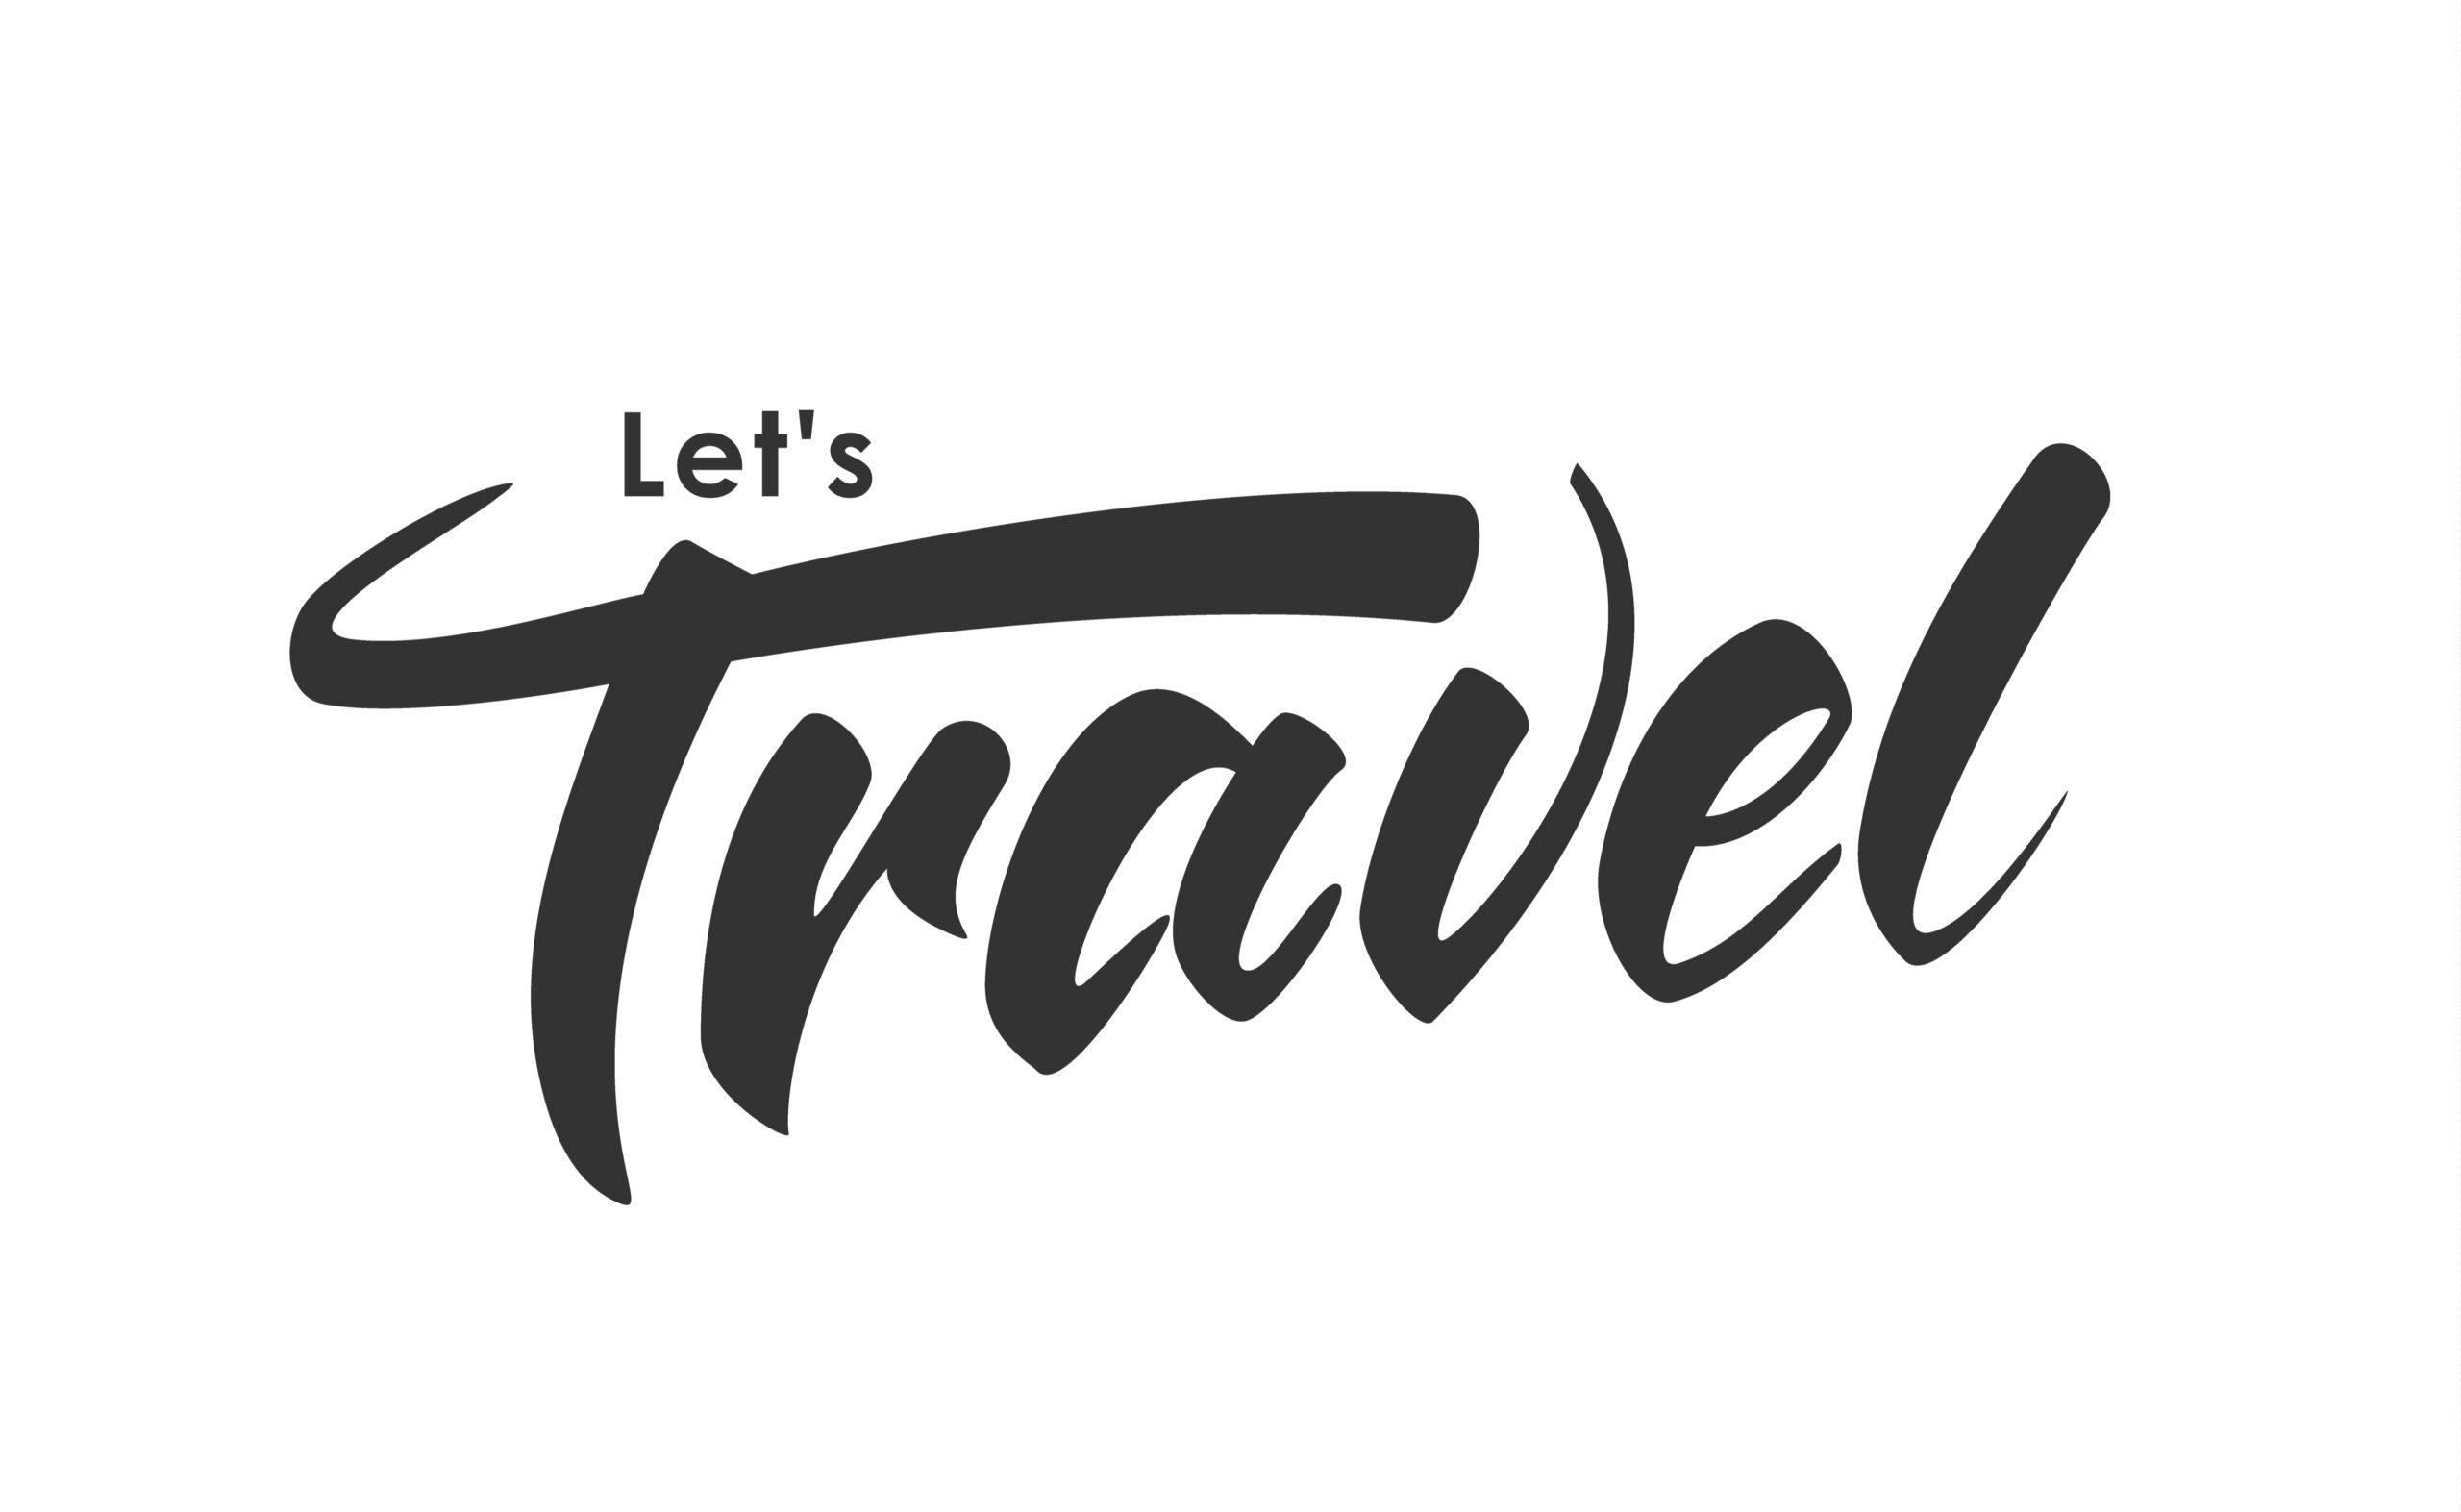 Brush lettering of Let' s Travel on white background